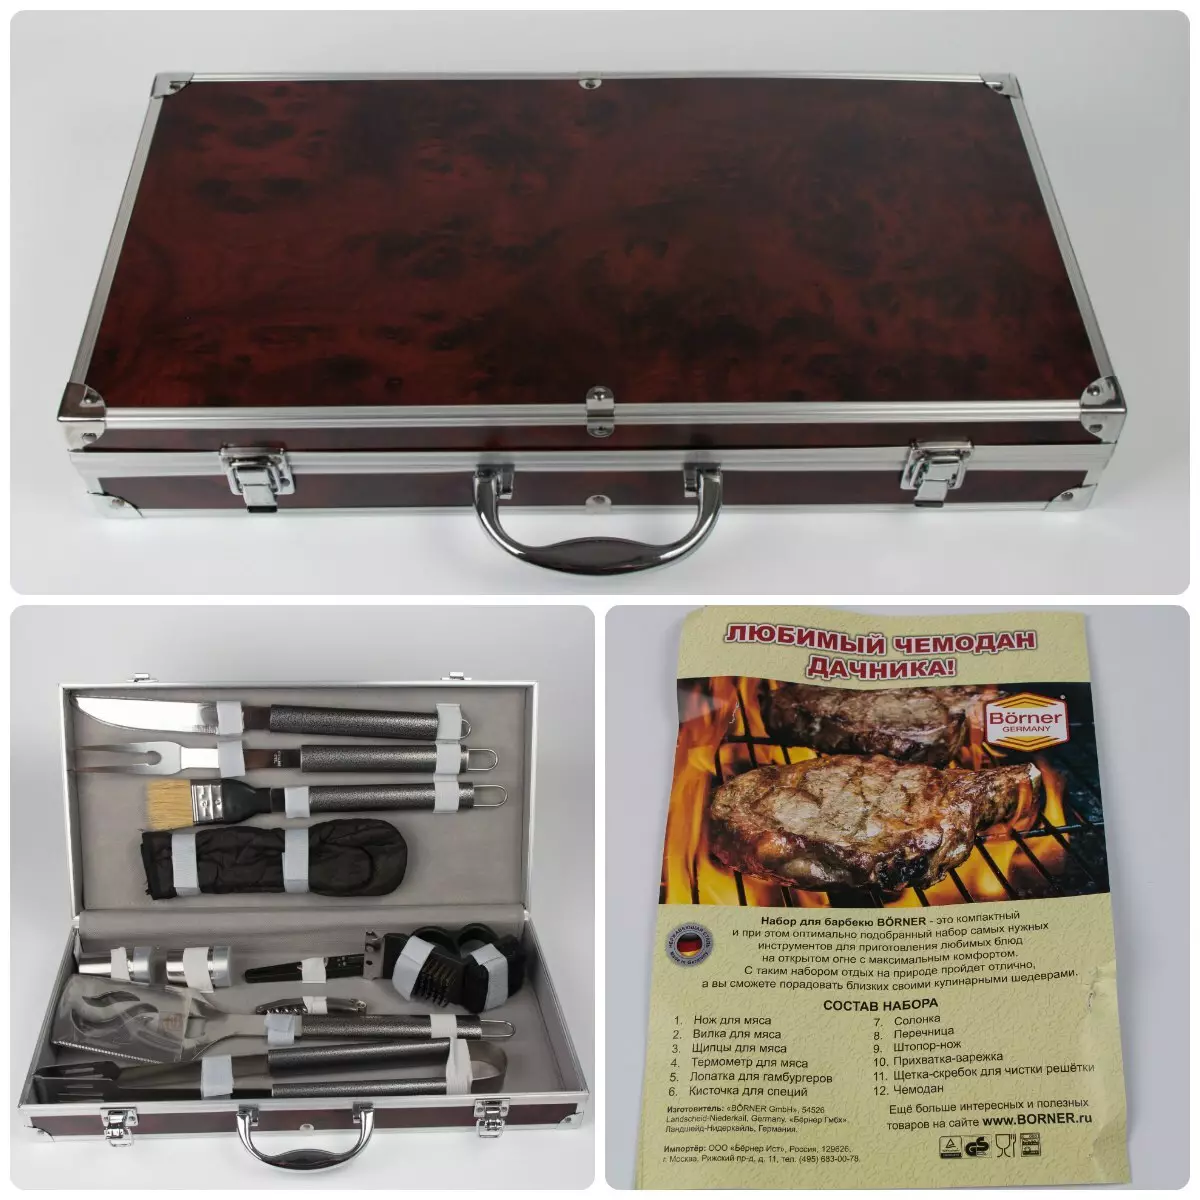 Ensemble de barbecue: valises cadeaux avec barbecue et outils grillades, étuis avec accessoires pour brochettes et mangalov 24972_26